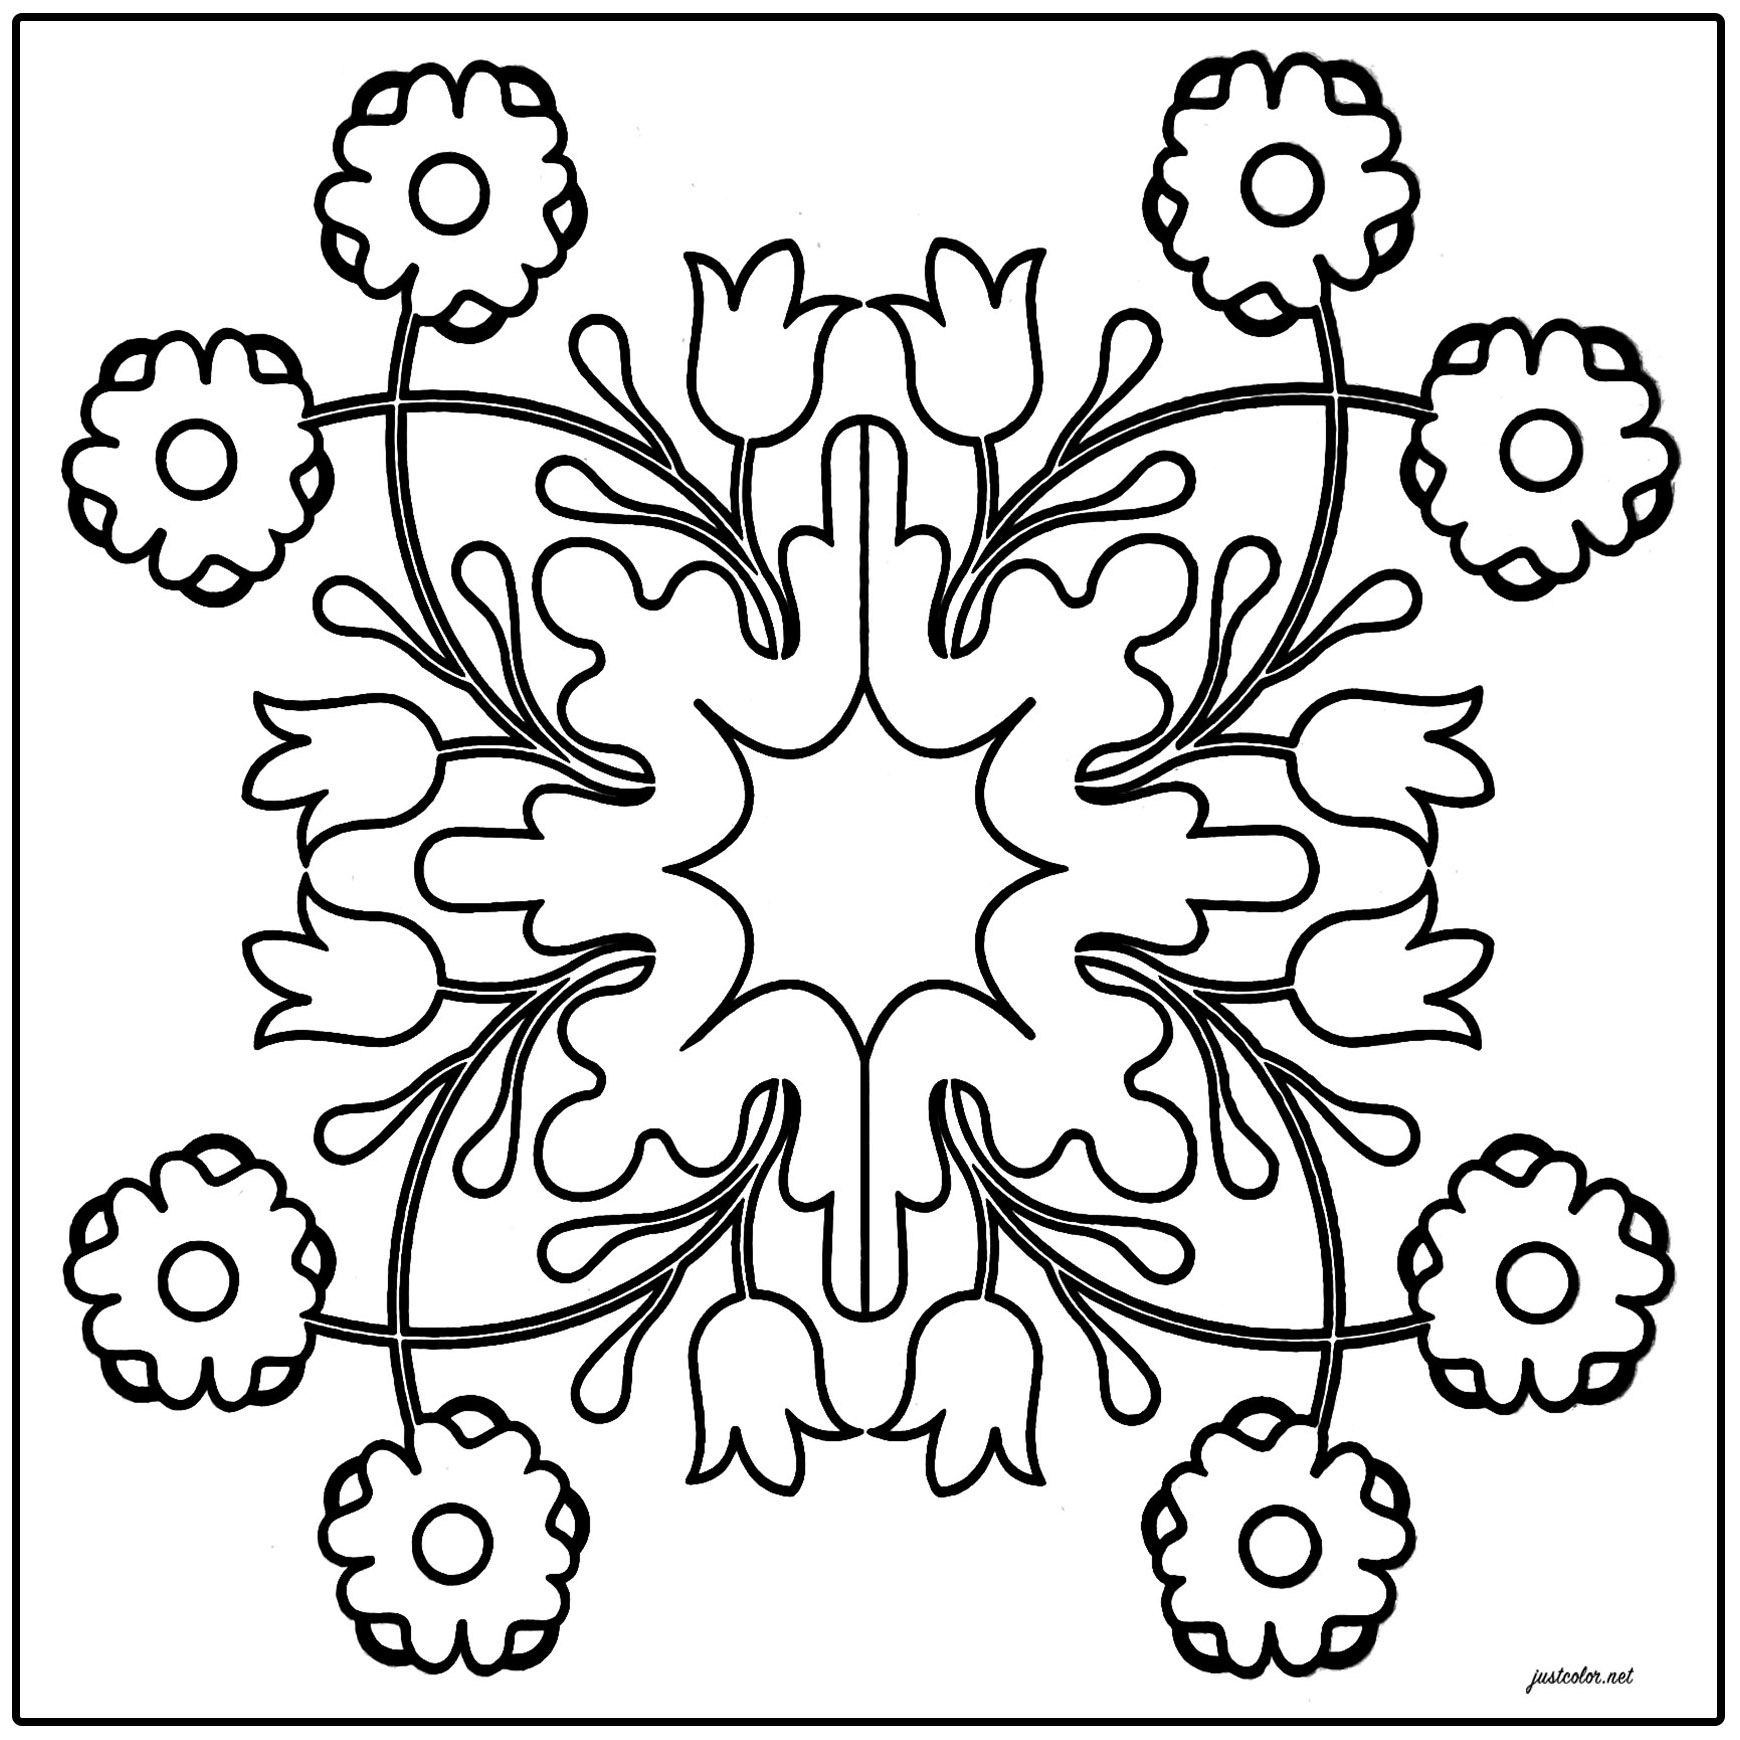 Simple azulejo du Portugal. Il comporte de jolis motifs fleuris et symétriques